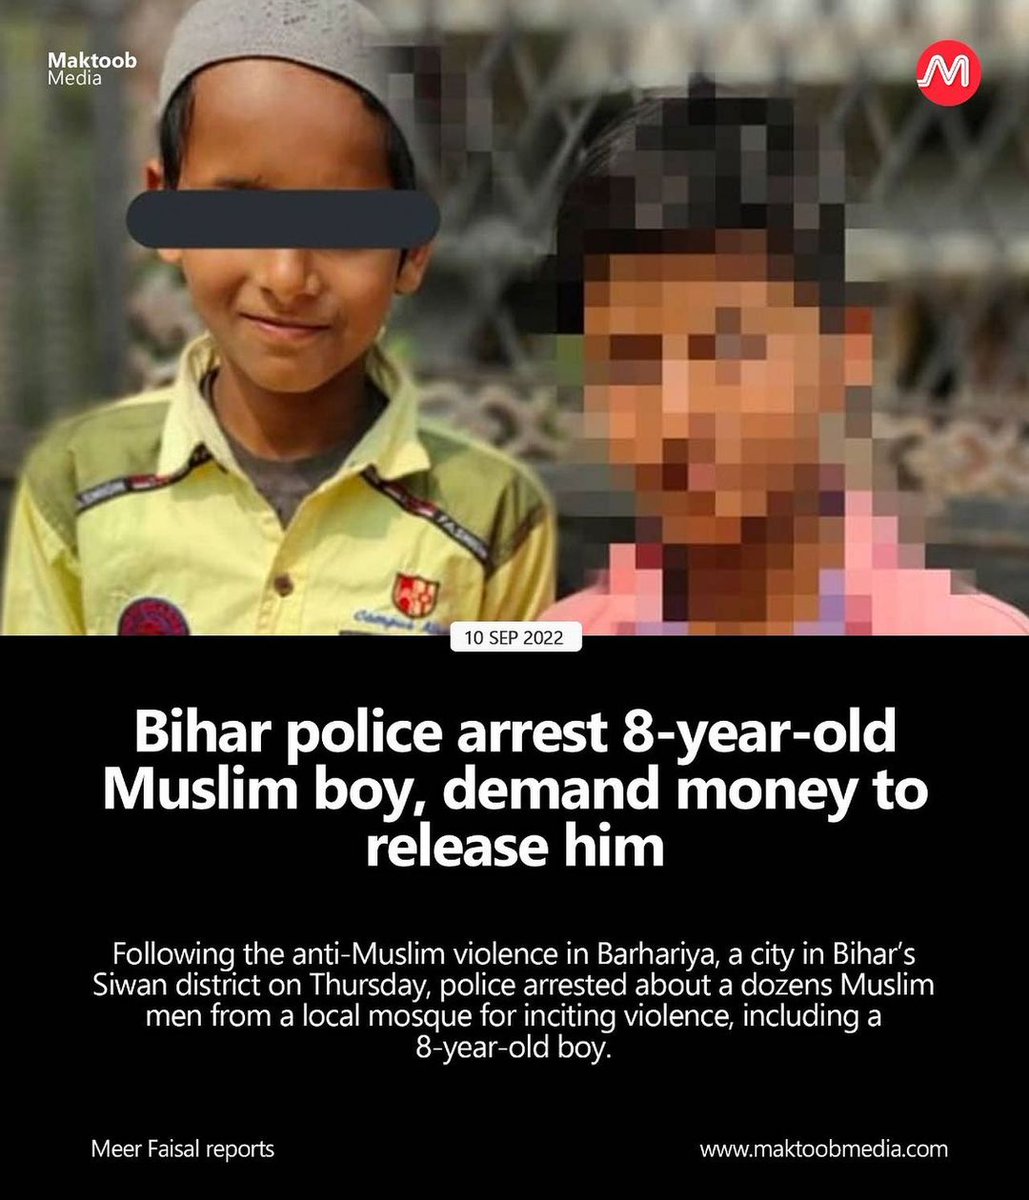 8 साल के मासूम को बिहार पुलिस की कैद में आज चौथा दिन है
सेकुलर पार्टी और नेता सब ख़ामोश हैं
#ReleaseRizwan